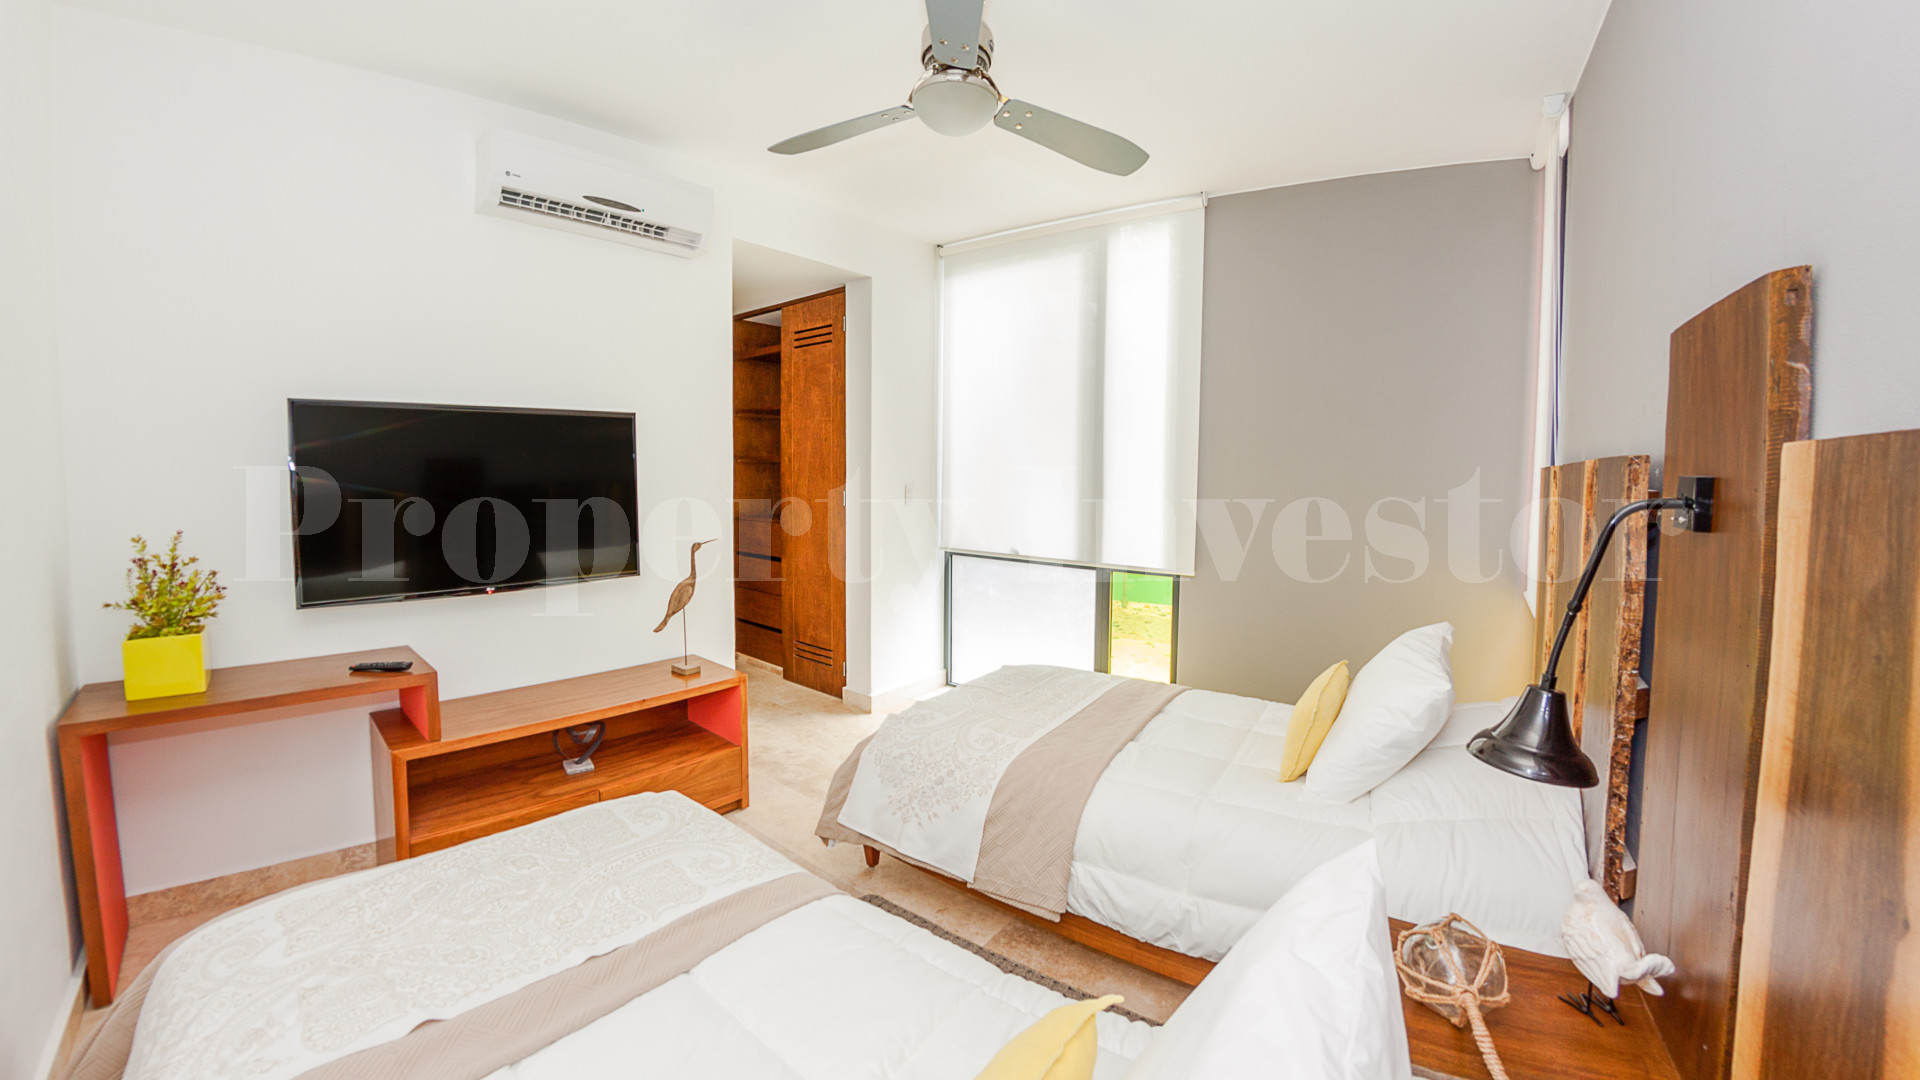 2 Bedroom Boutique Apartment in Tulum (Unit 106)